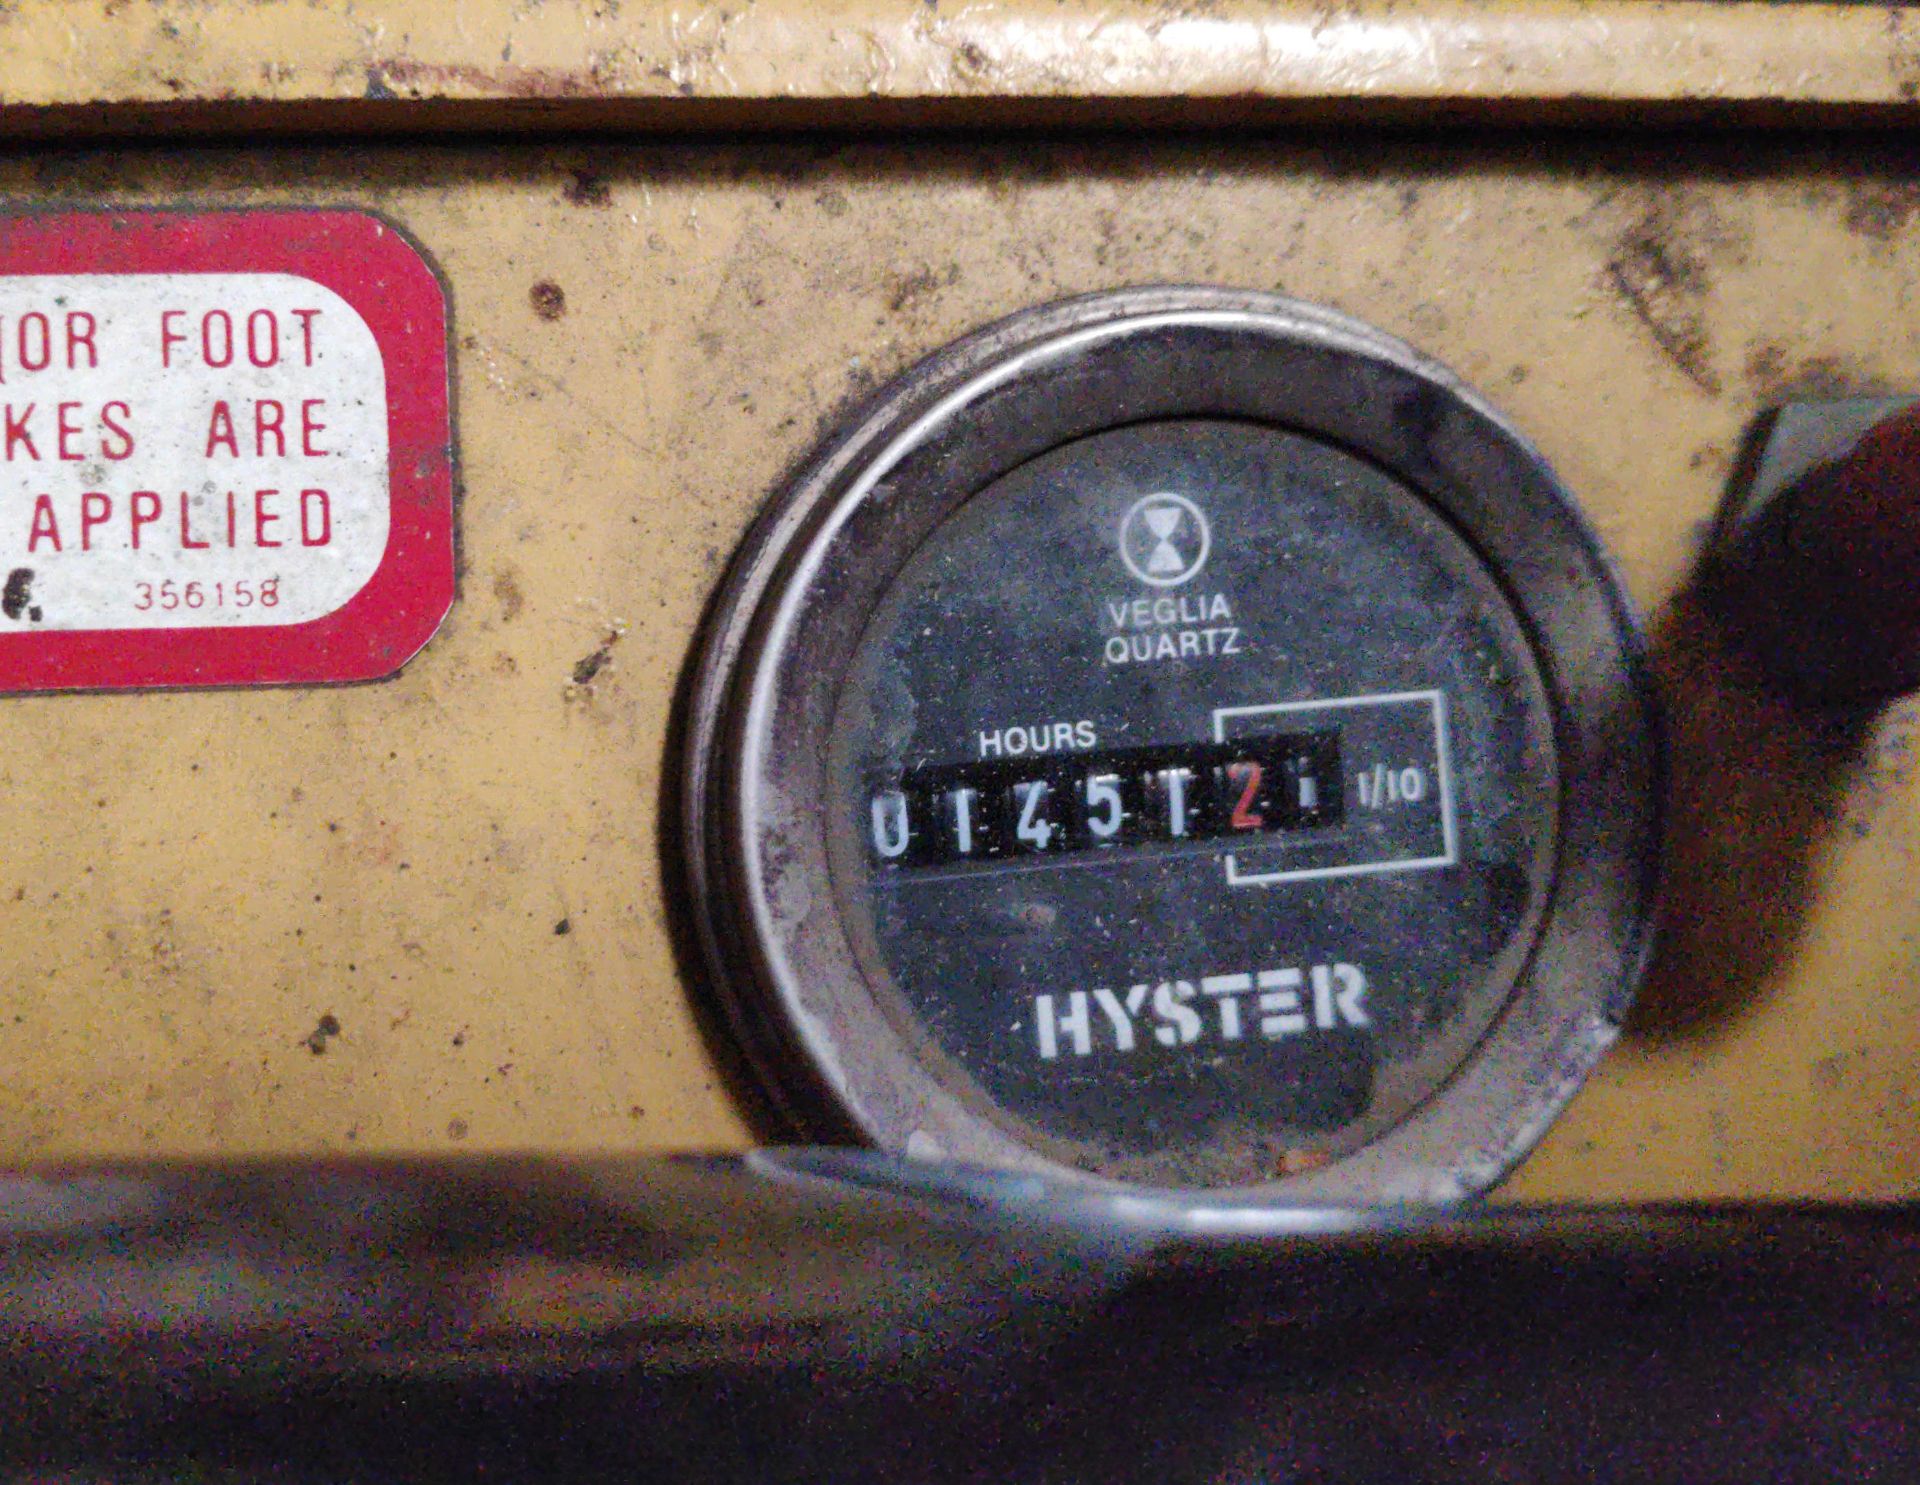 1988 Hyster 1200Kg Electric Counterbalance Forklift Truck - 1451 Hours - PLEASE READ DESCRIPTION - - Bild 8 aus 28